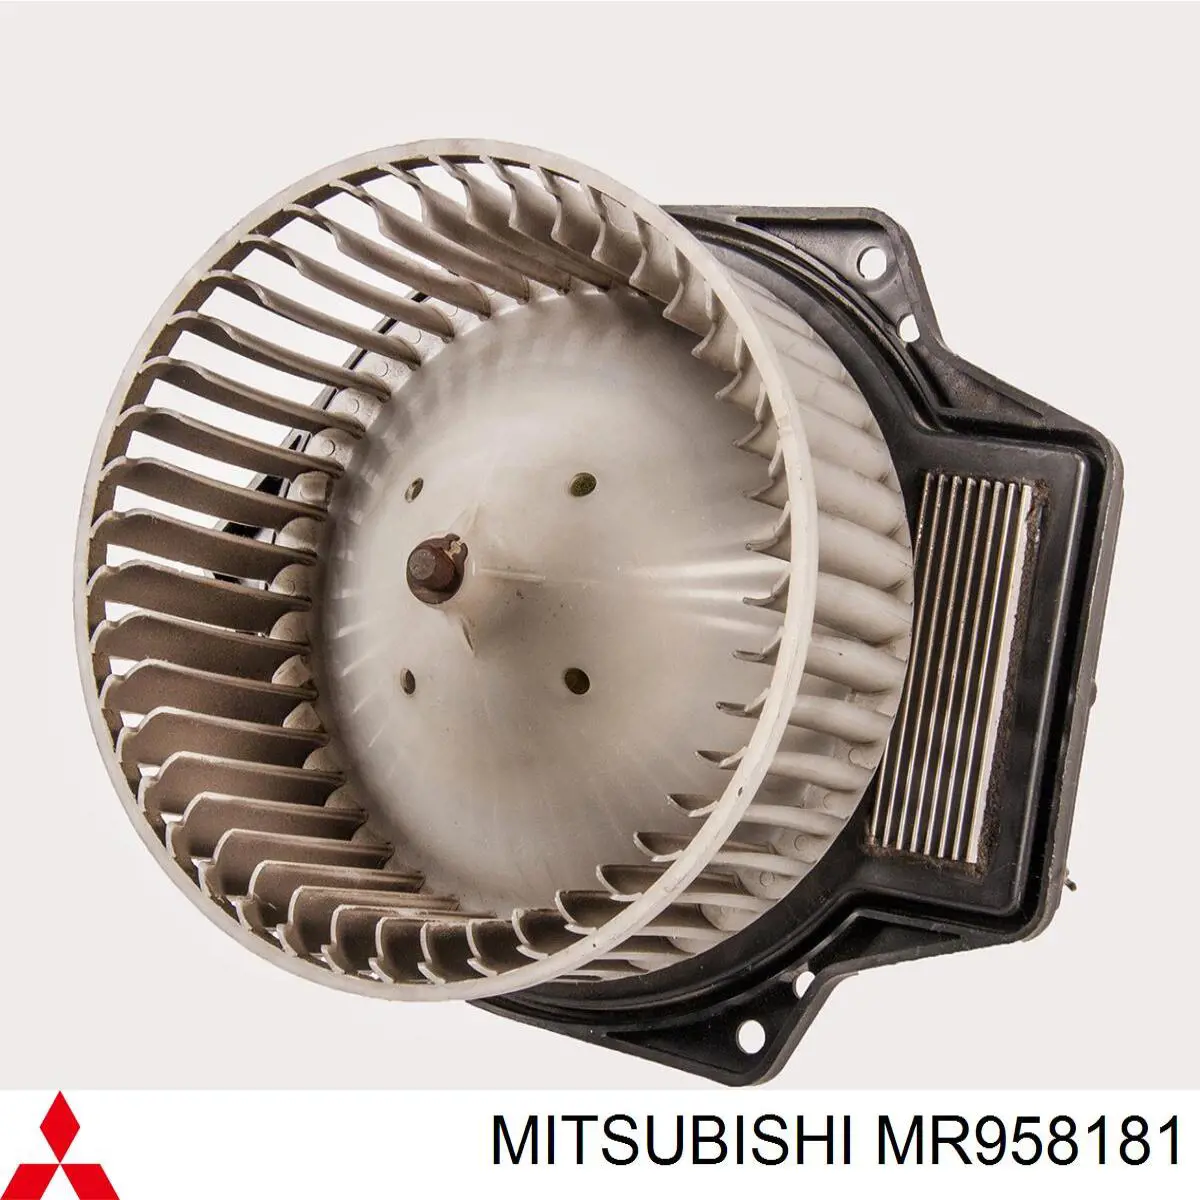 MR958181 Mitsubishi